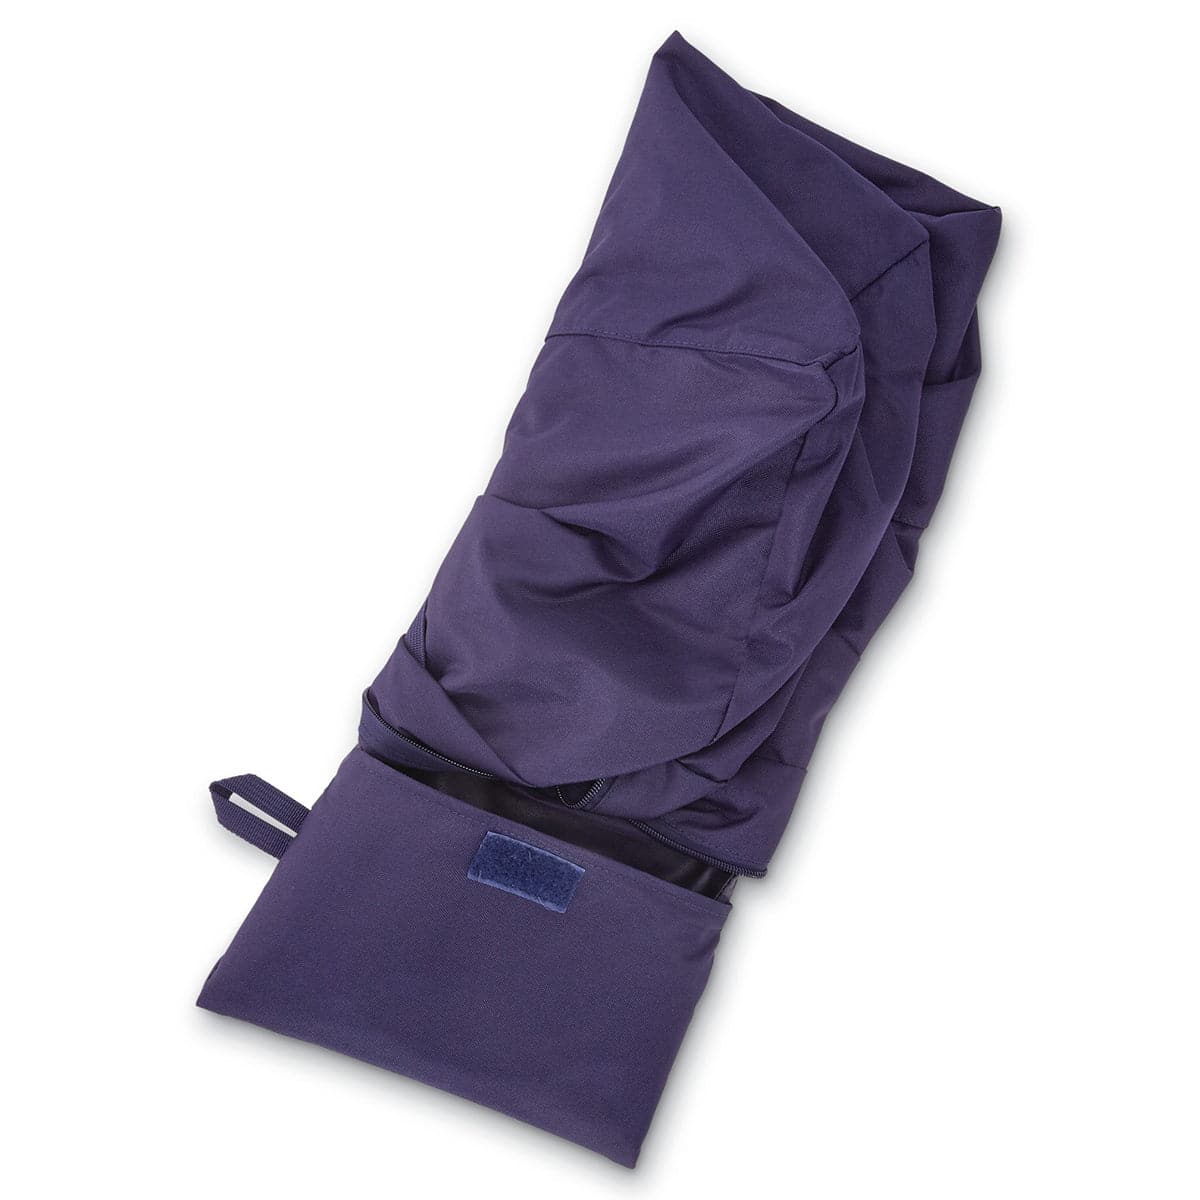 Samsonite Foldaway Duffle Bag